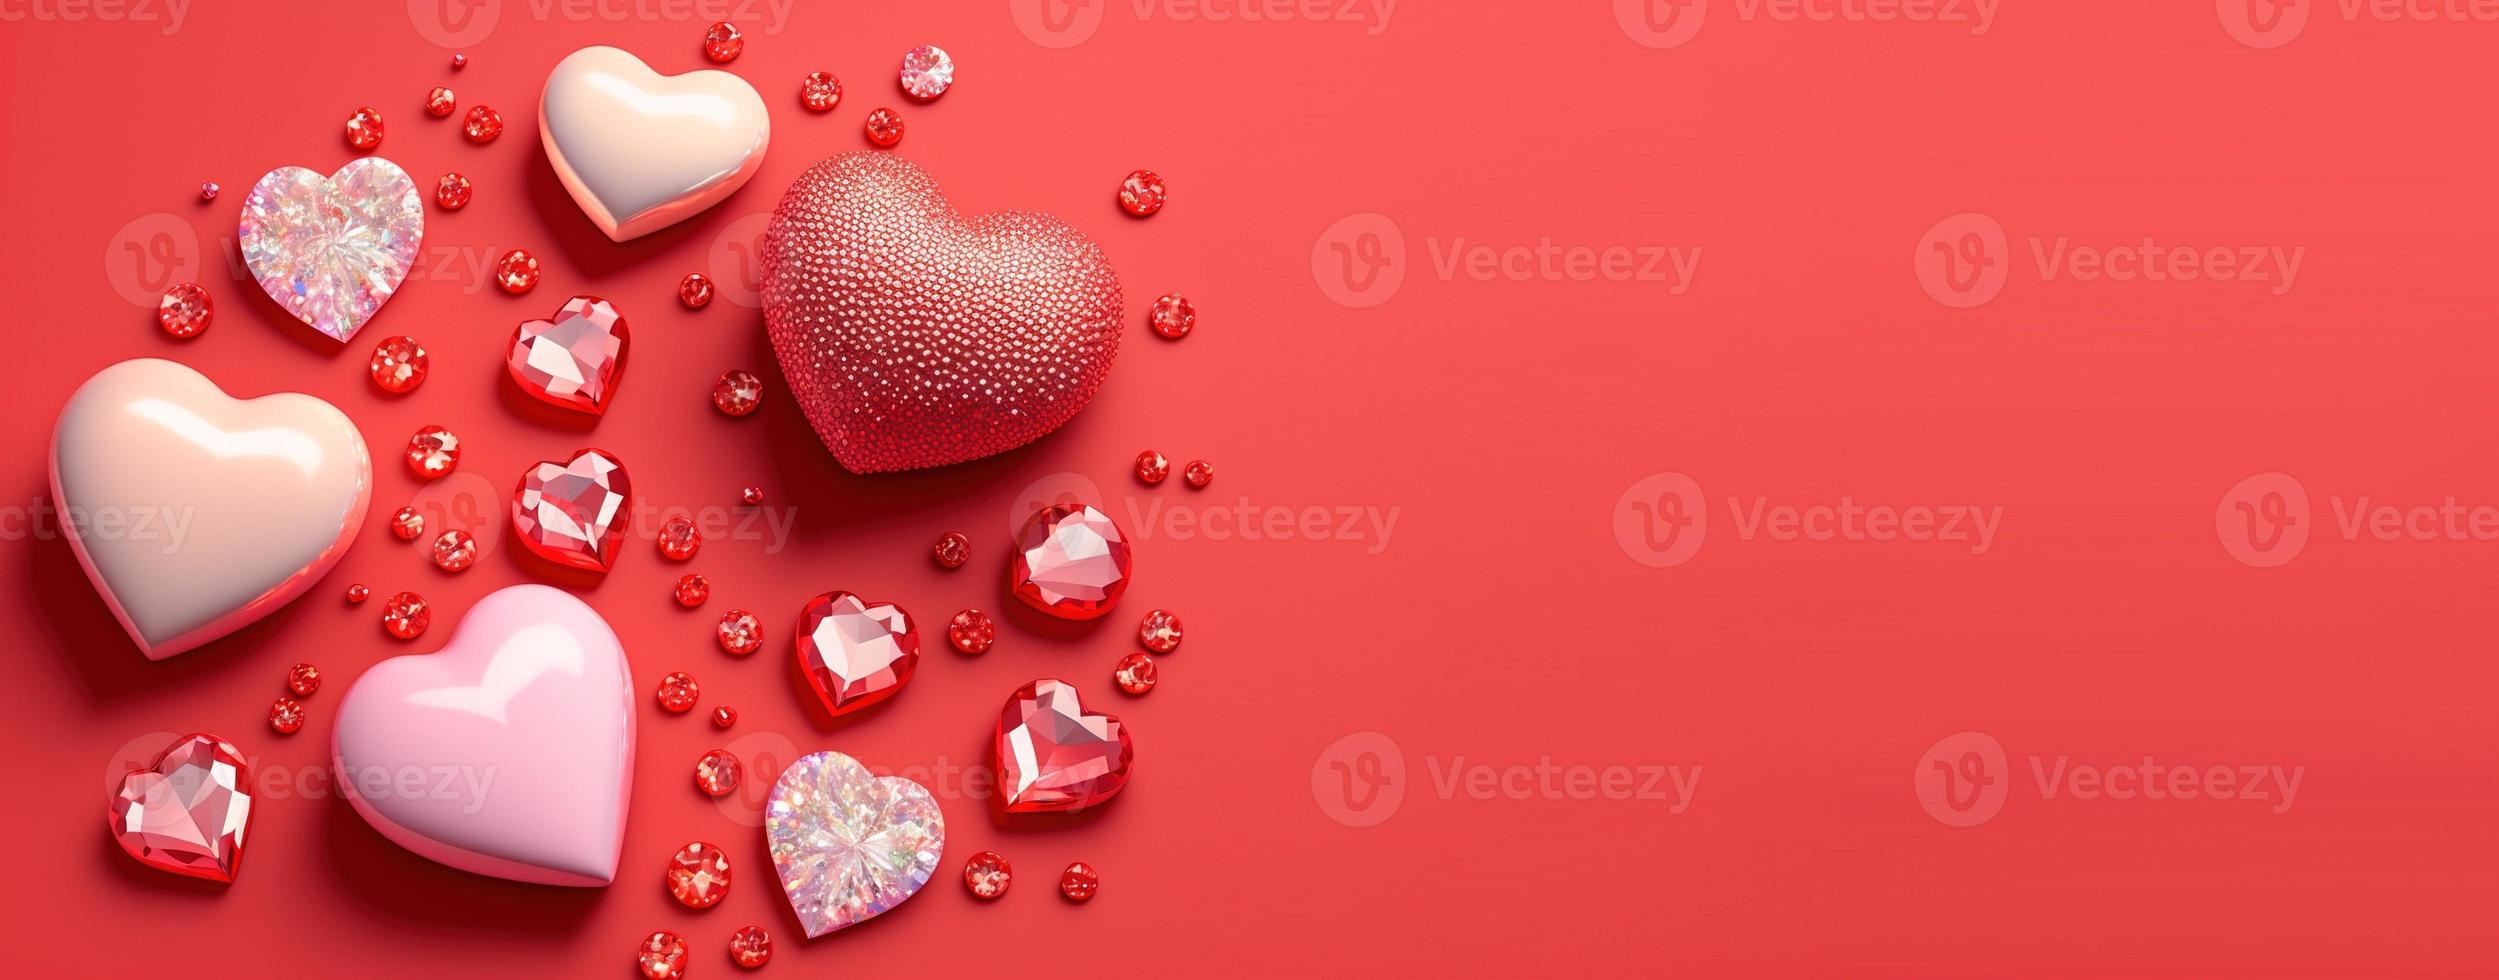 forma de coração 3d cintilante, diamante e design de cristal para plano de fundo e banner do dia dos namorados foto